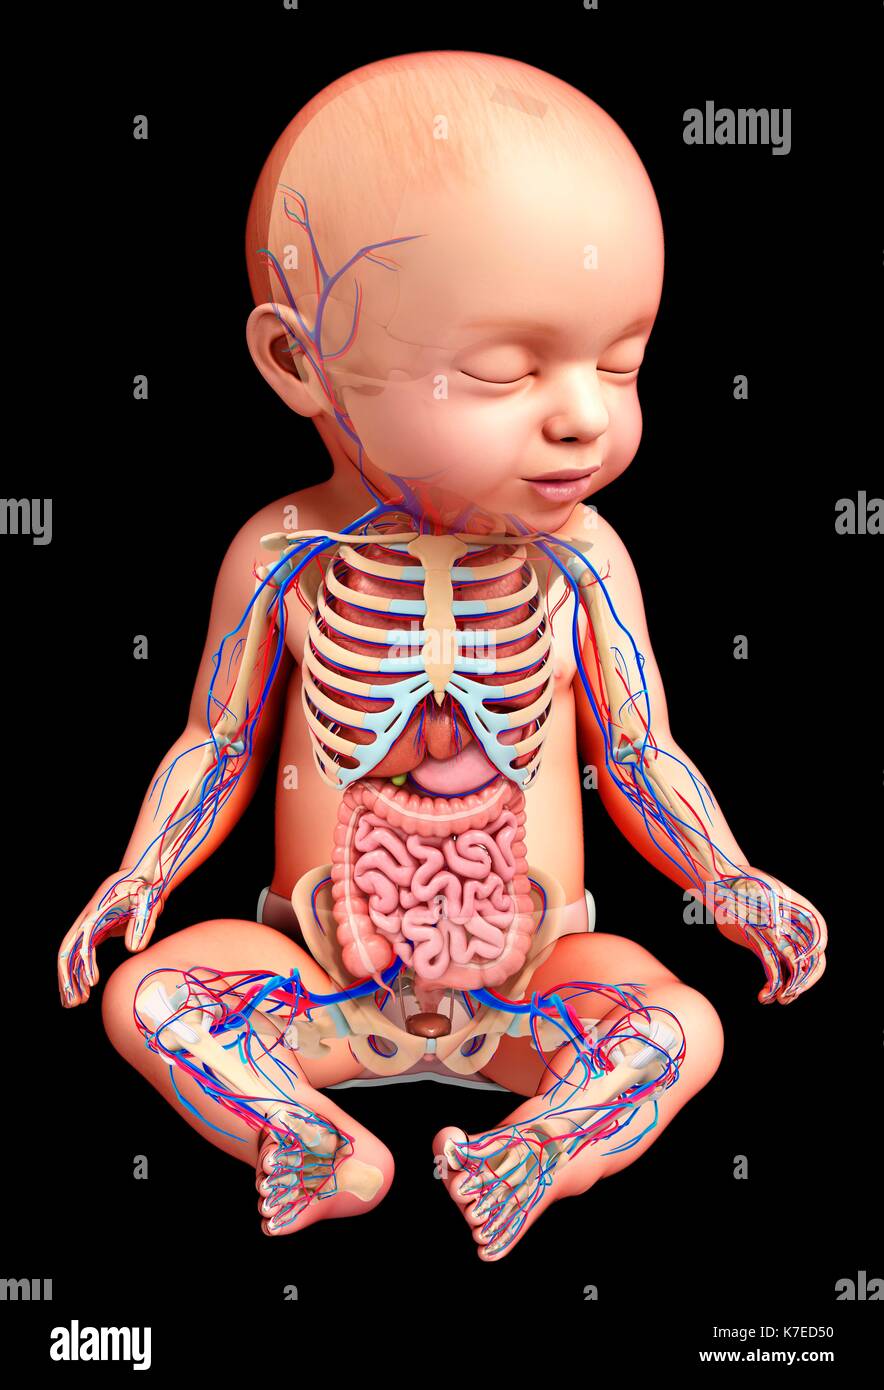 https://c8.alamy.com/compes/k7ed50/ilustracion-de-una-anatomia-del-bebe-k7ed50.jpg